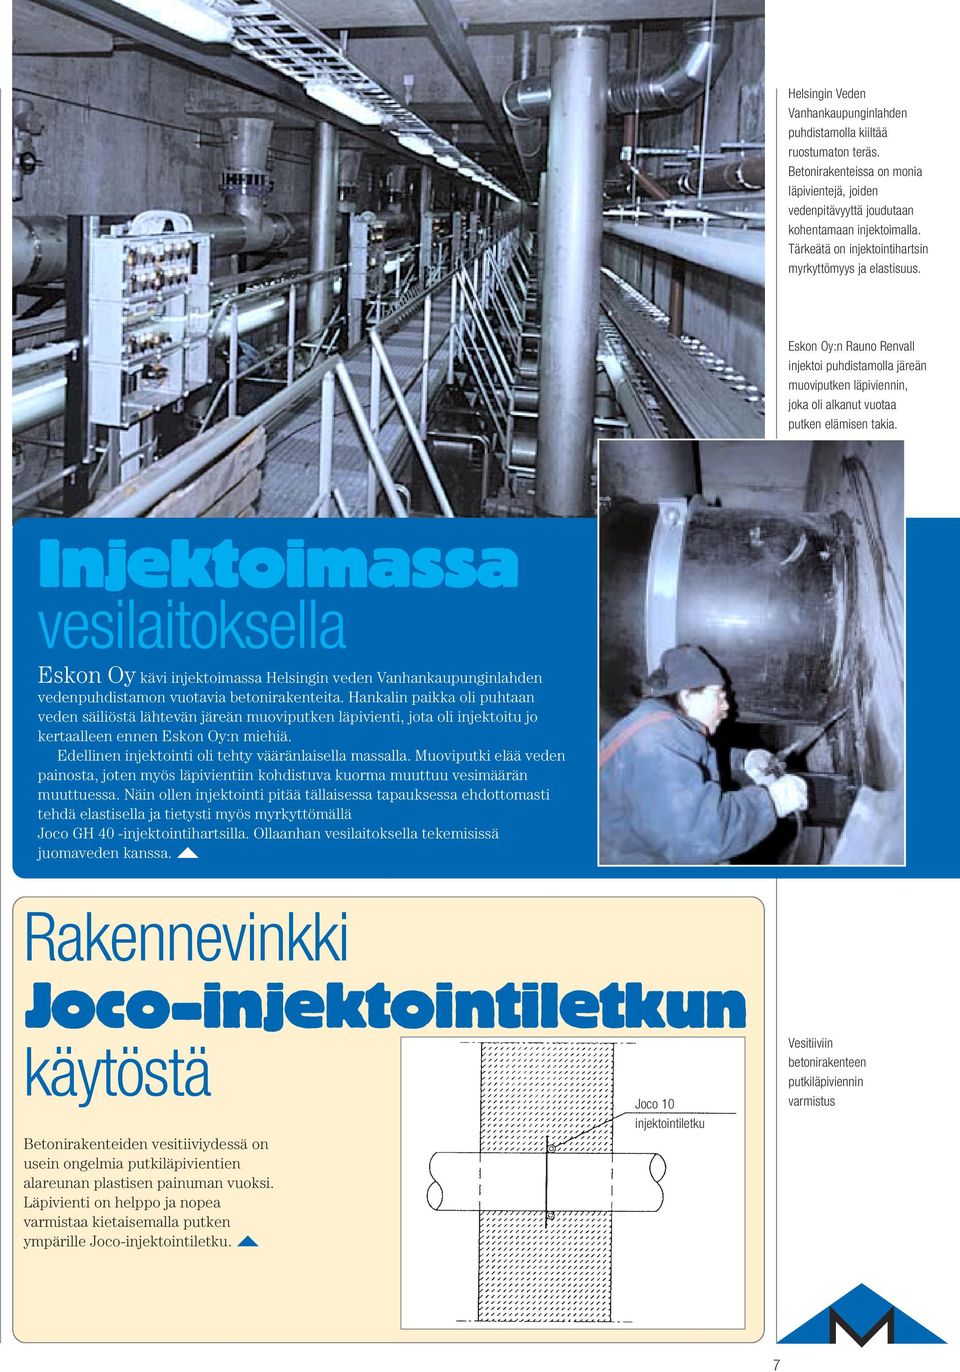 Injektoimassa vesilaitoksella Eskon Oy kävi injektoimassa Helsingin veden Vanhankaupunginlahden vedenpuhdistamon vuotavia betonirakenteita.